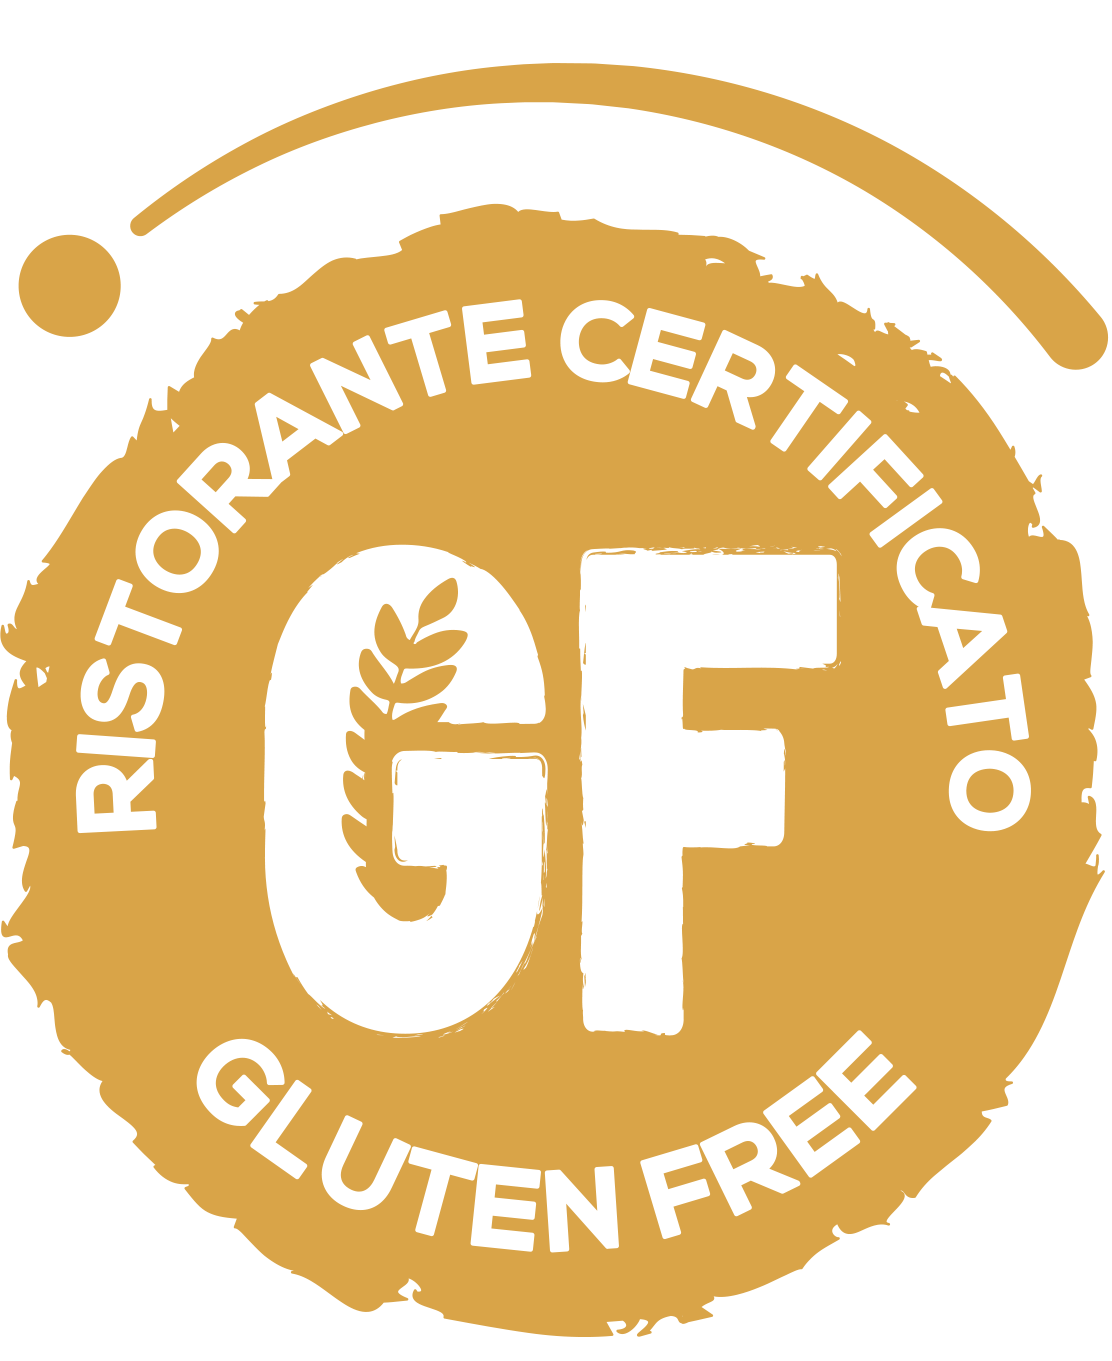 Gluten Free certified